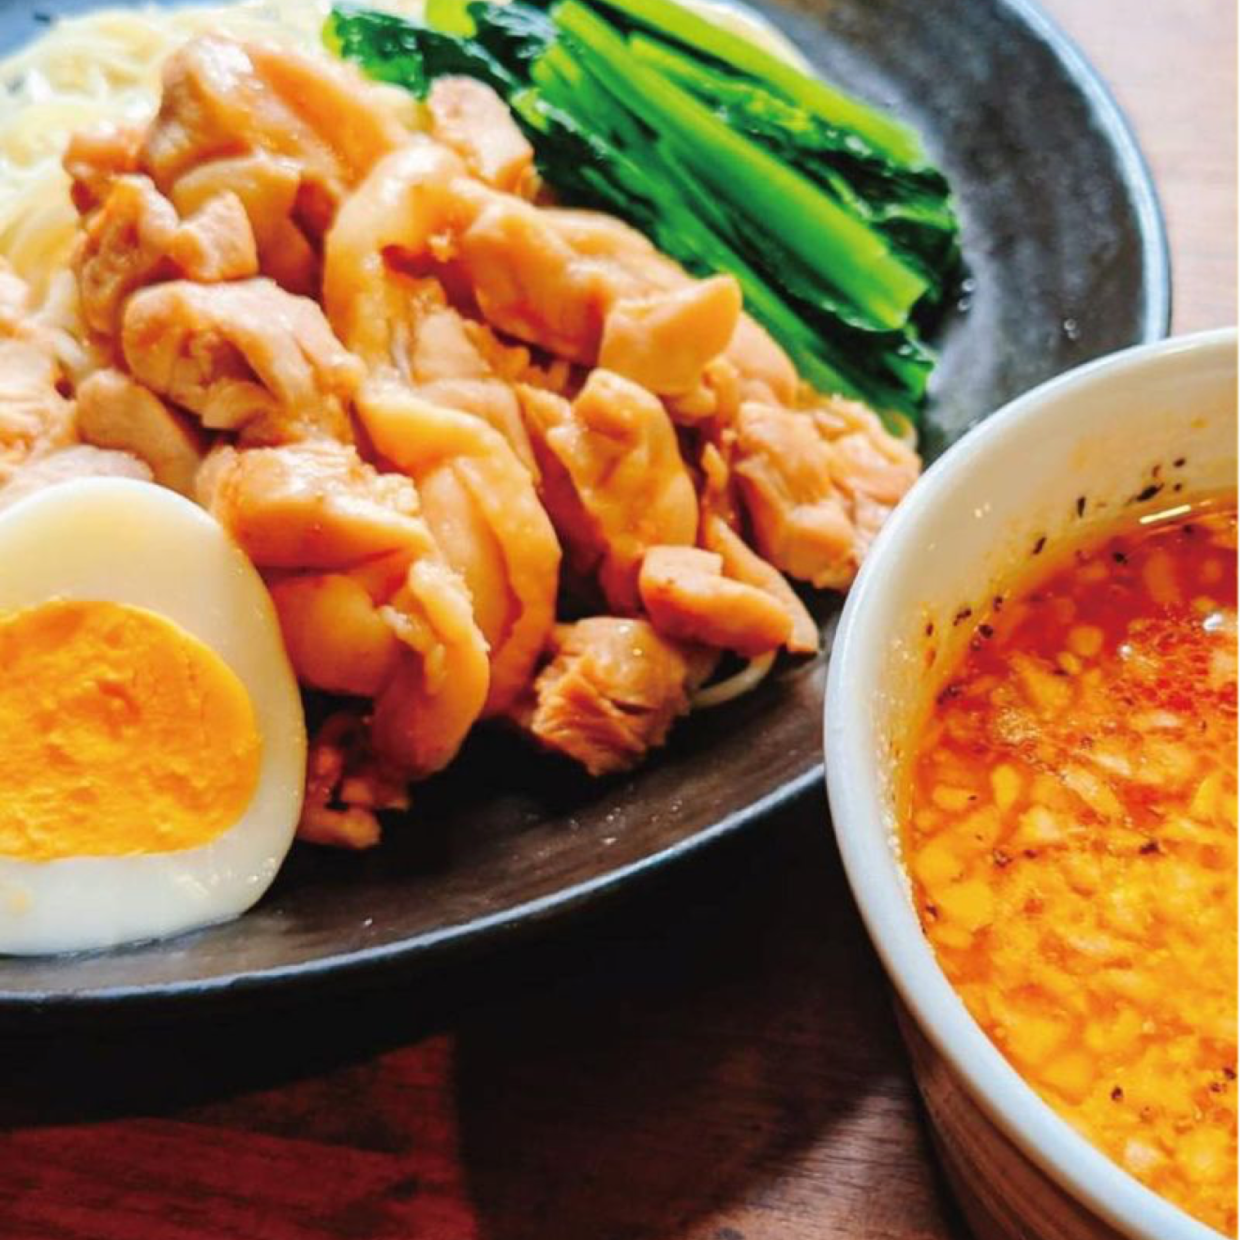  鶏のうま味がしみ出たスープが絶品。自宅で作る「洋風つけ麺」レシピ 